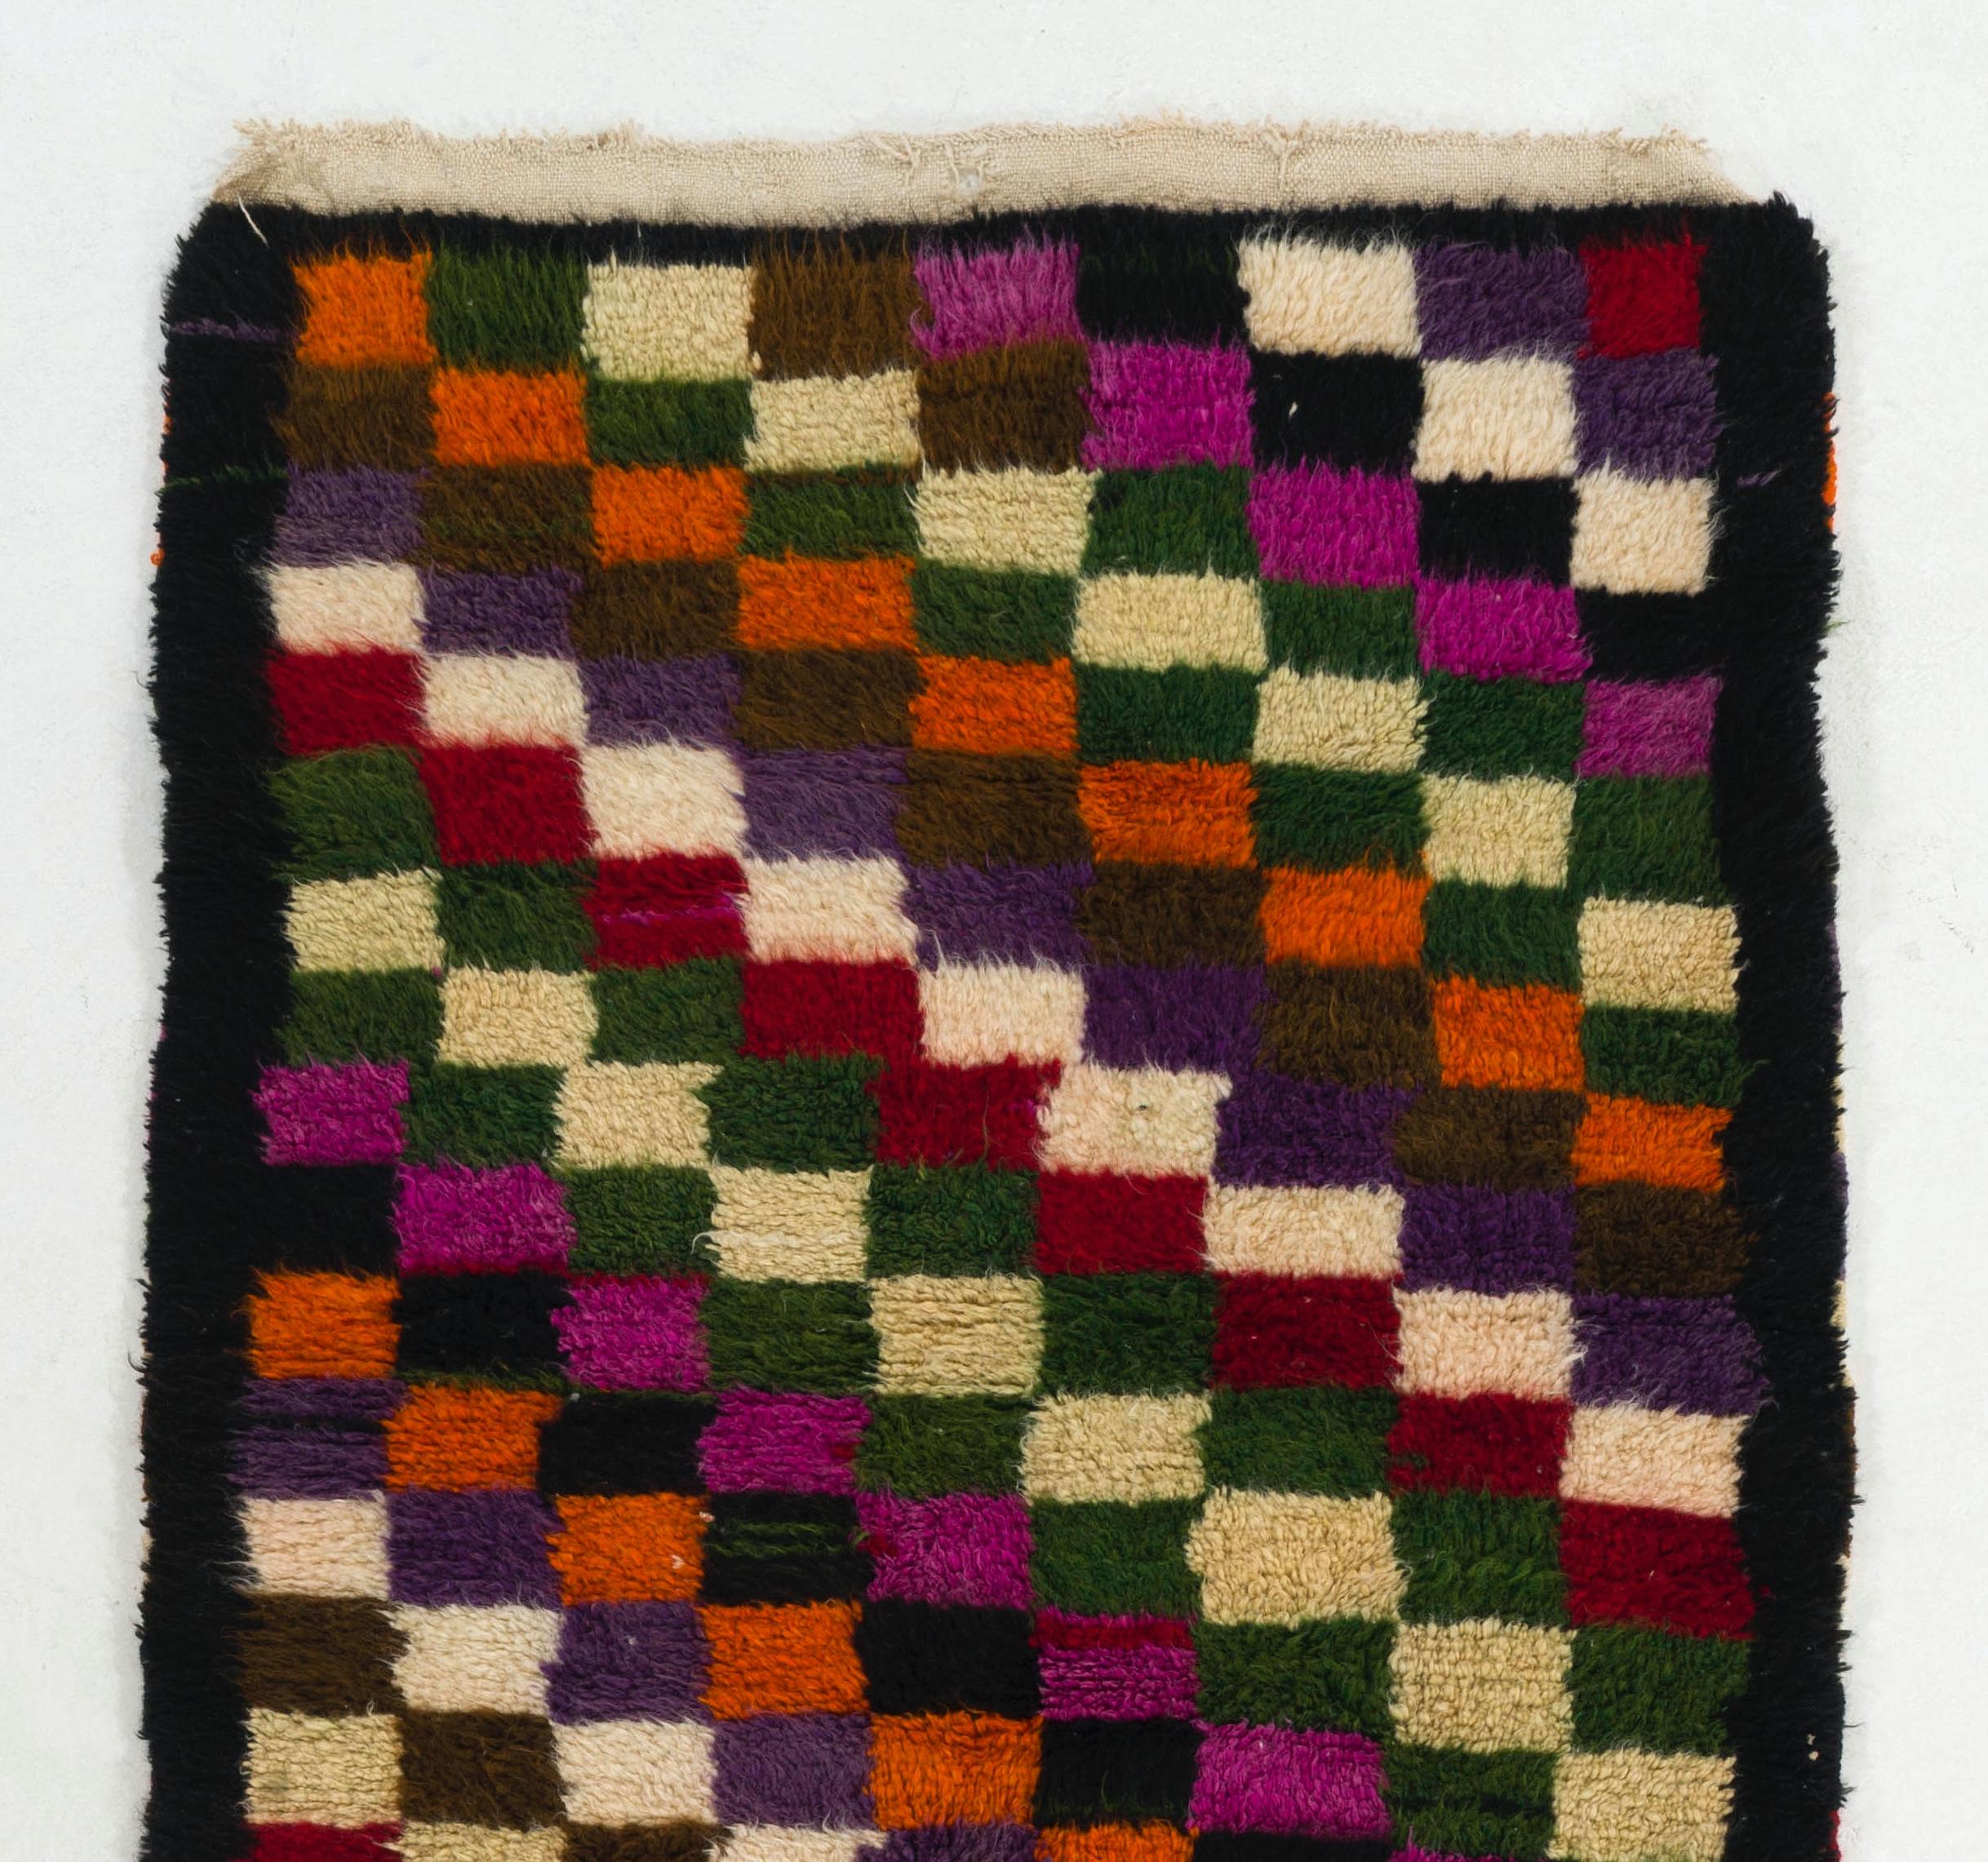 Ein handgeknüpfter, dicker Tulu-Teppich aus Konya in der Zentraltürkei. Der Teppich besteht aus natürlicher, ungefärbter Lammwolle und ist daher sehr weich und bequem. Diese minimalistischen Teppiche mit glänzendem Wollflor wurden für den täglichen